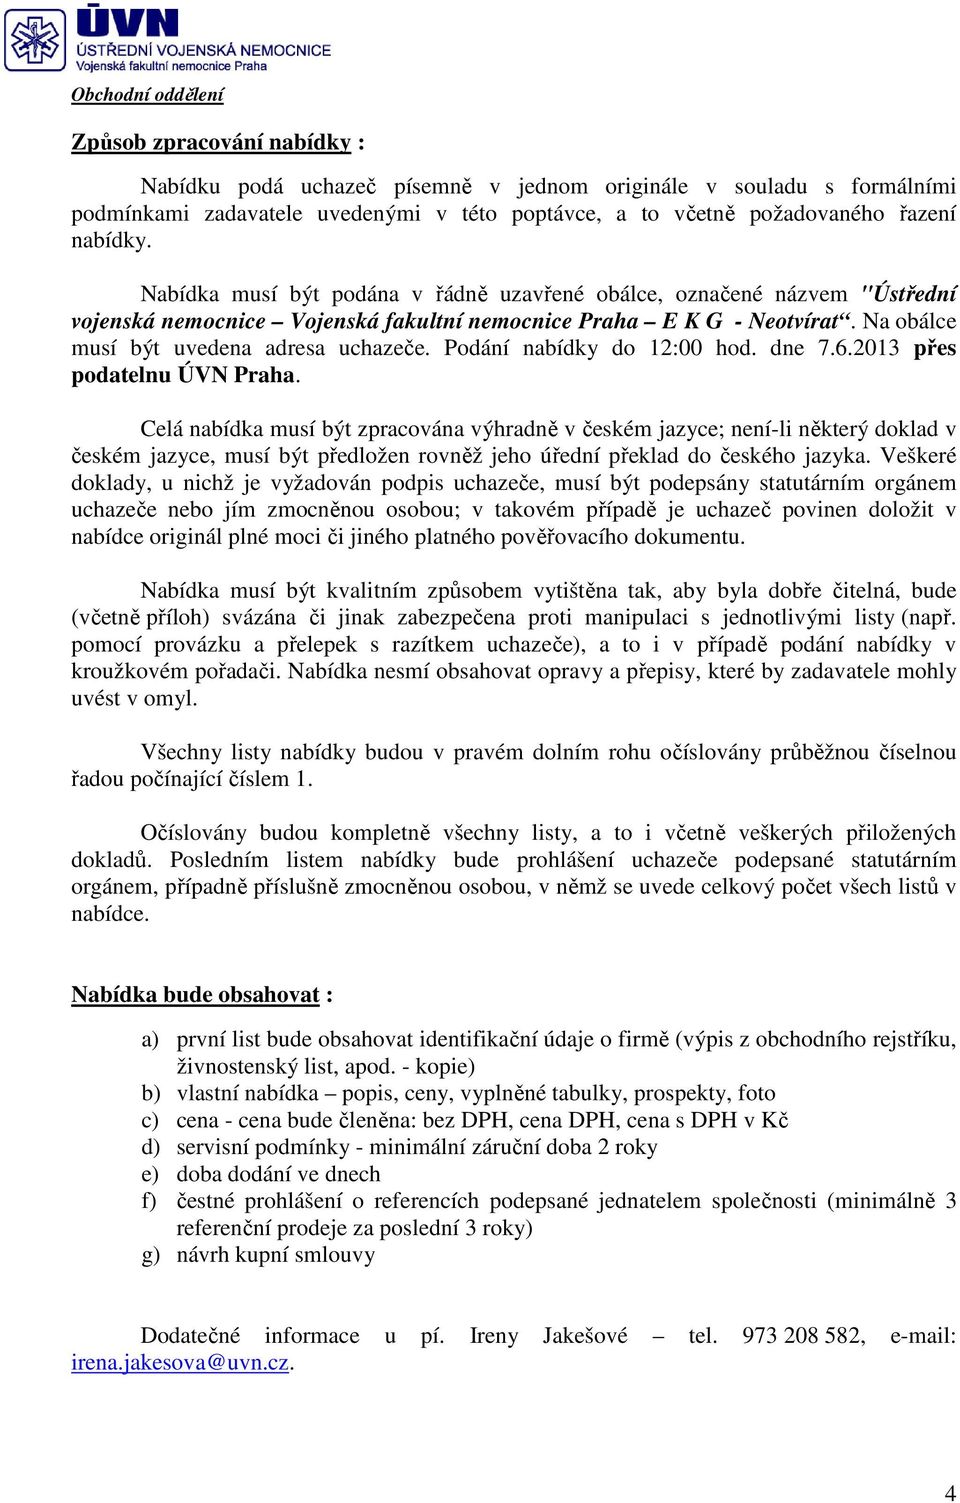 Podání nabídky do 12:00 hod. dne 7.6.2013 přes podatelnu ÚVN Praha.